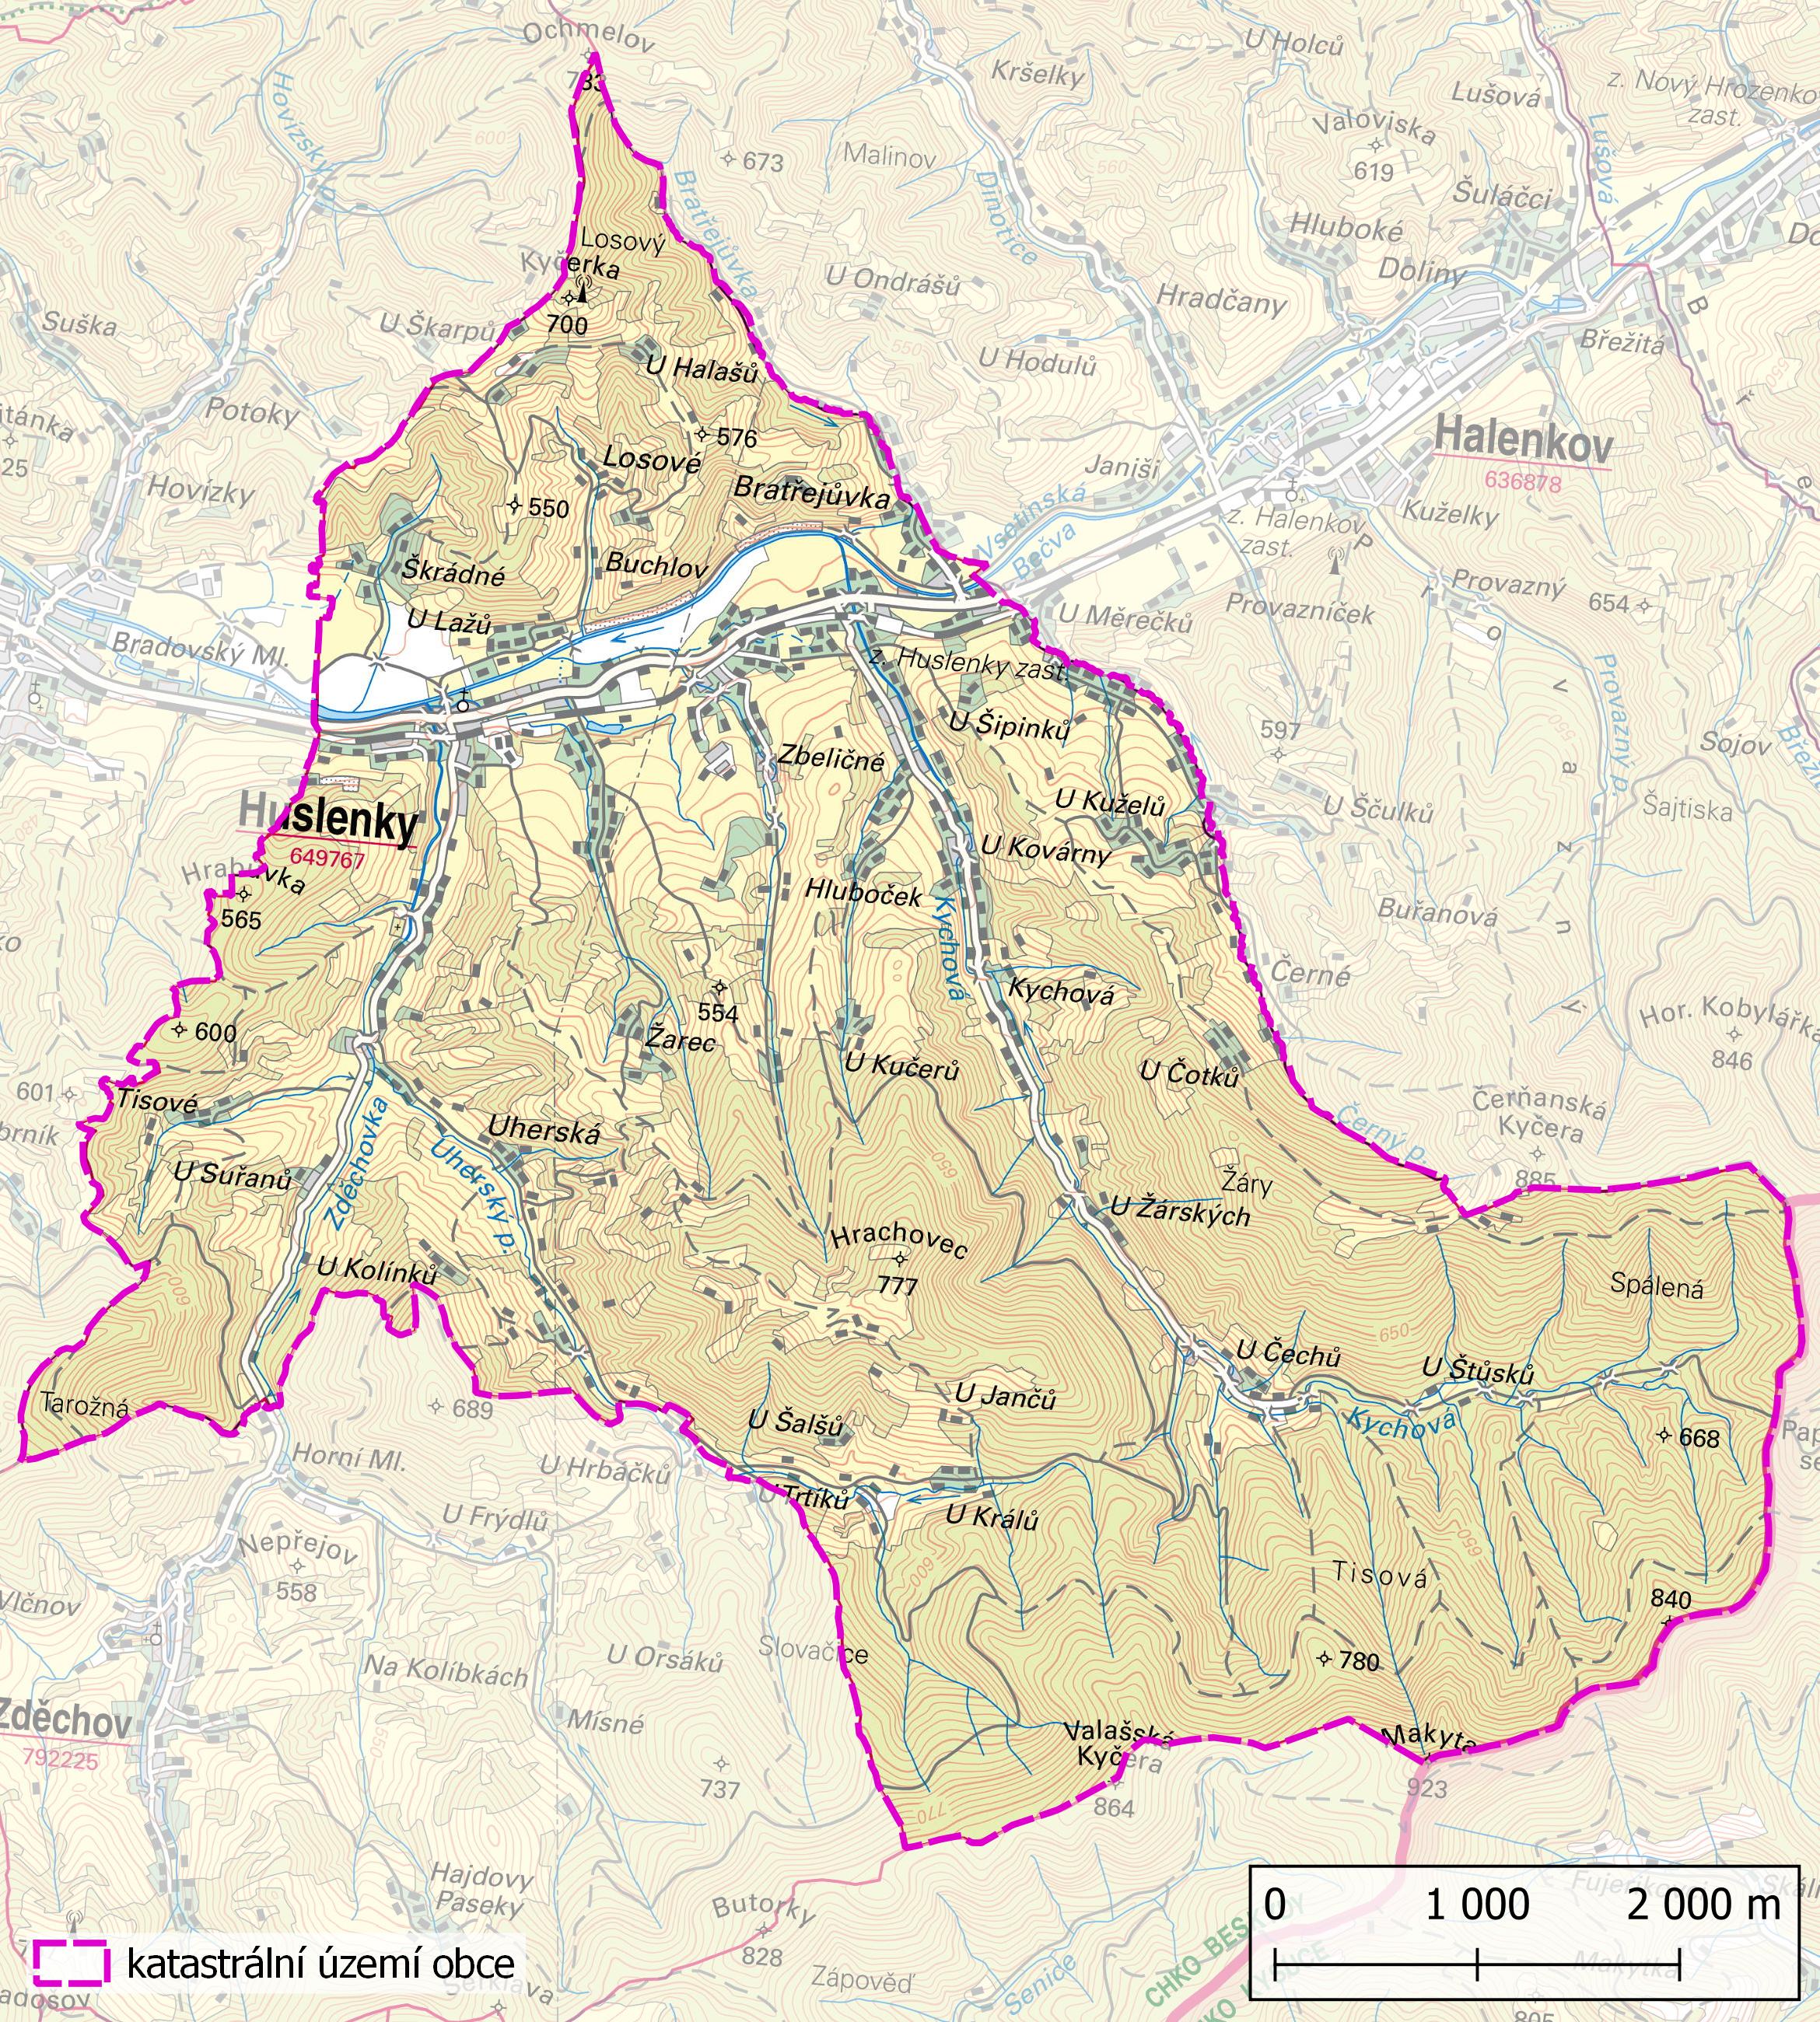 Katastrální území obce